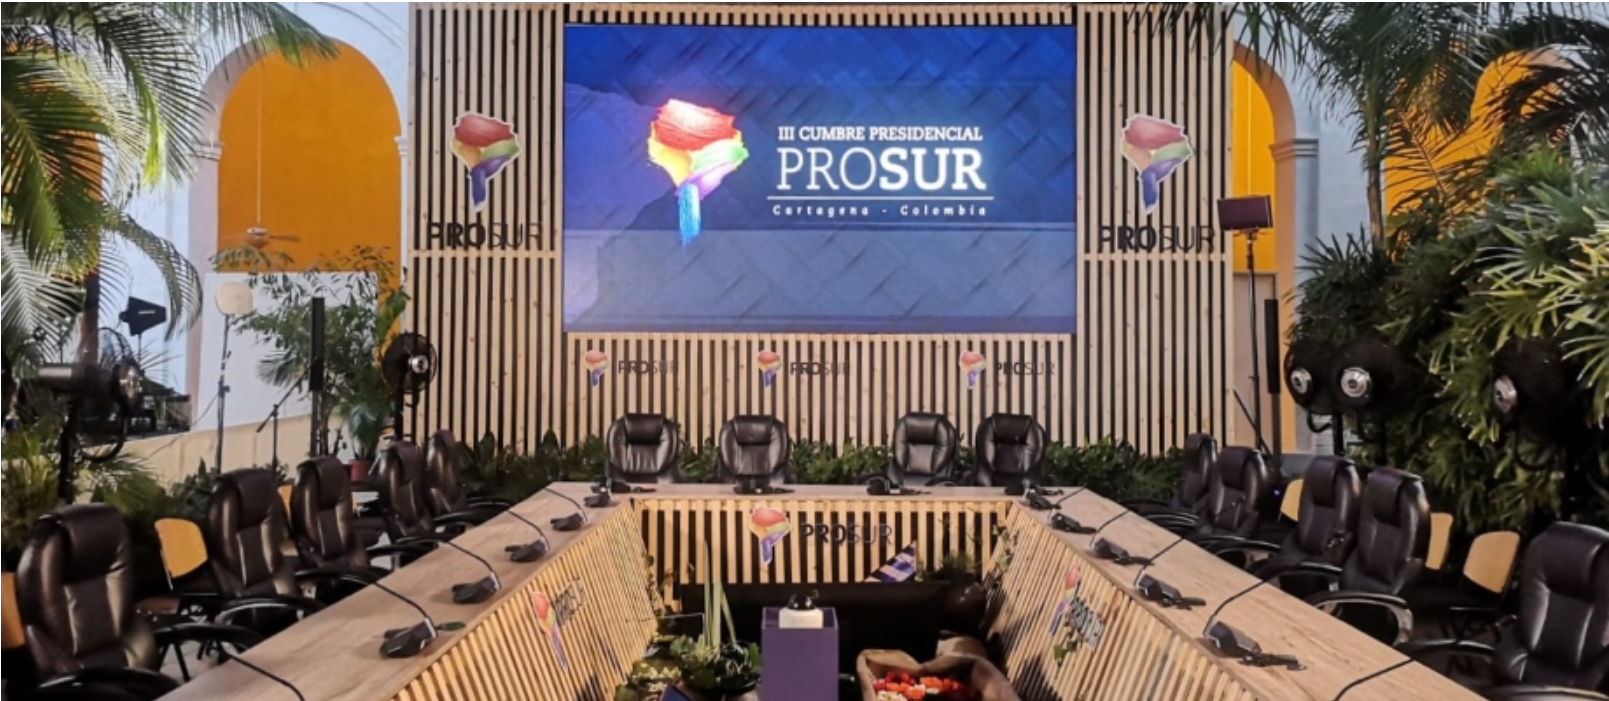 Colombia lidera III Cumbre de Presidencial de PROSUR este jueves 27 de enero en Cartagena